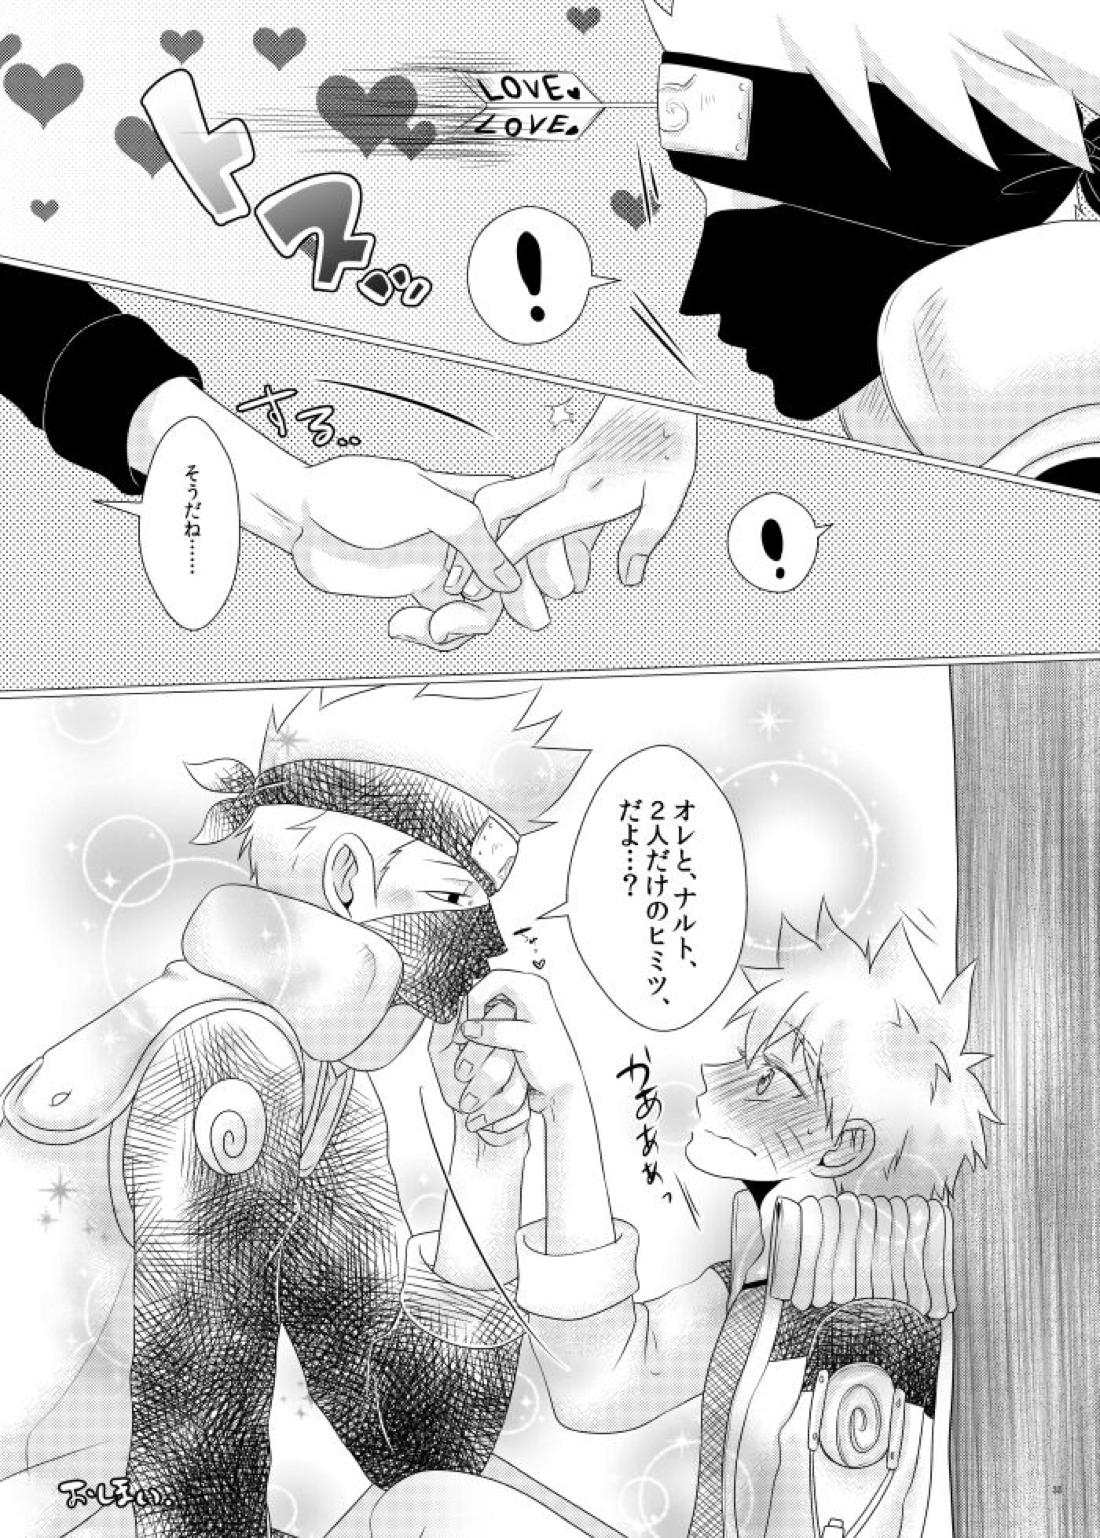 【BL漫画 NARUTO】カカシに何度もキスされているうちに勃起してしまったナルトが先生に抜いてもらった後に挿入されちゃう野外ボーイズラブエッチ31